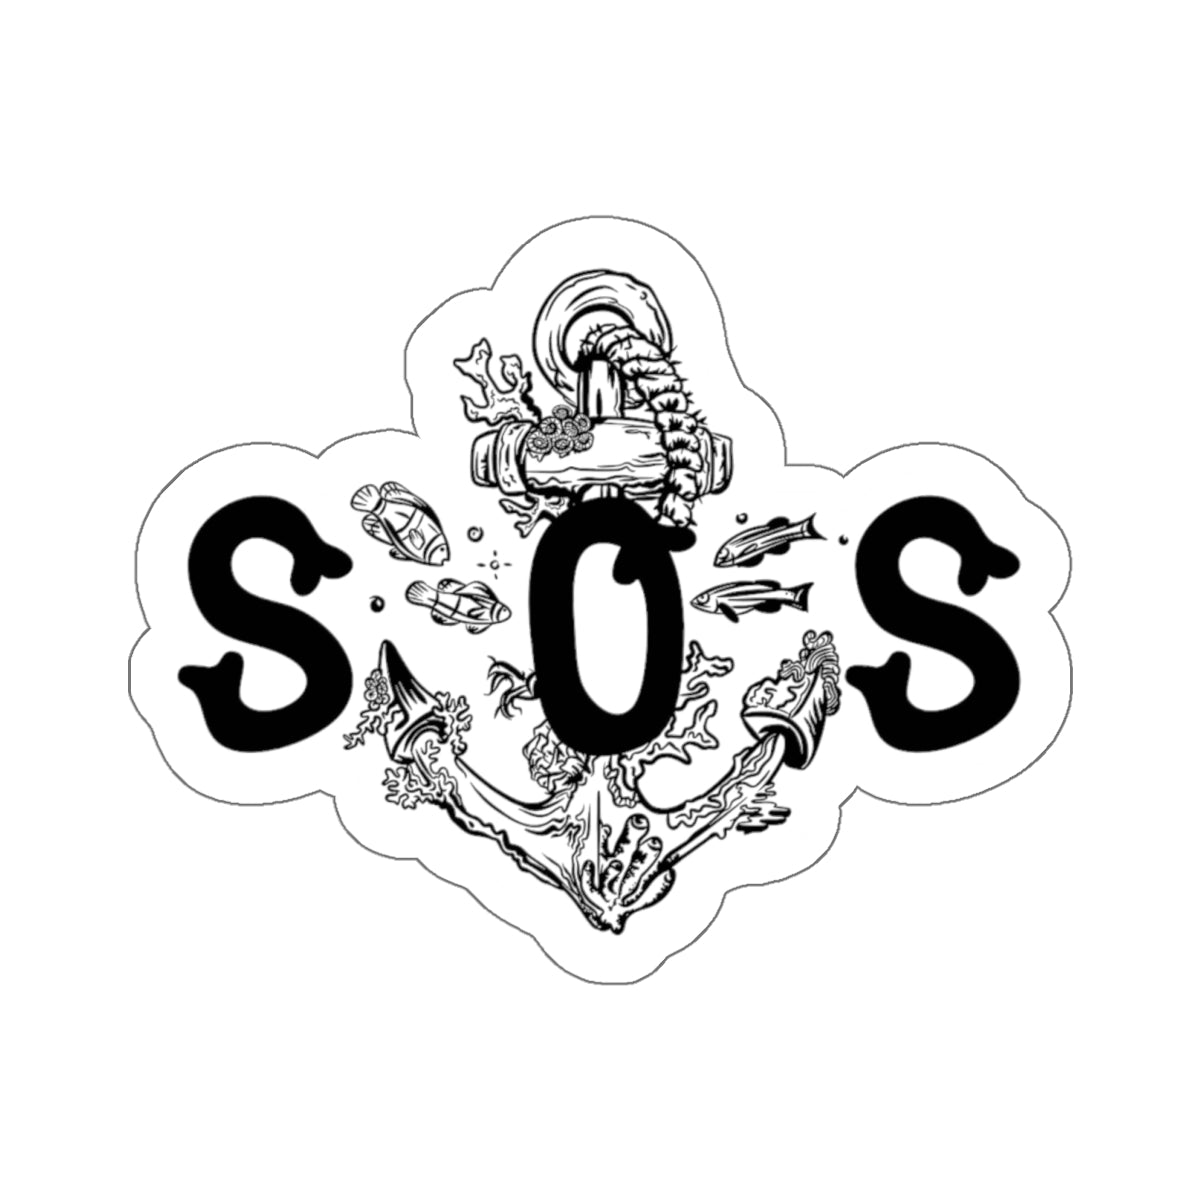 SOS Reef Anchor Sticker